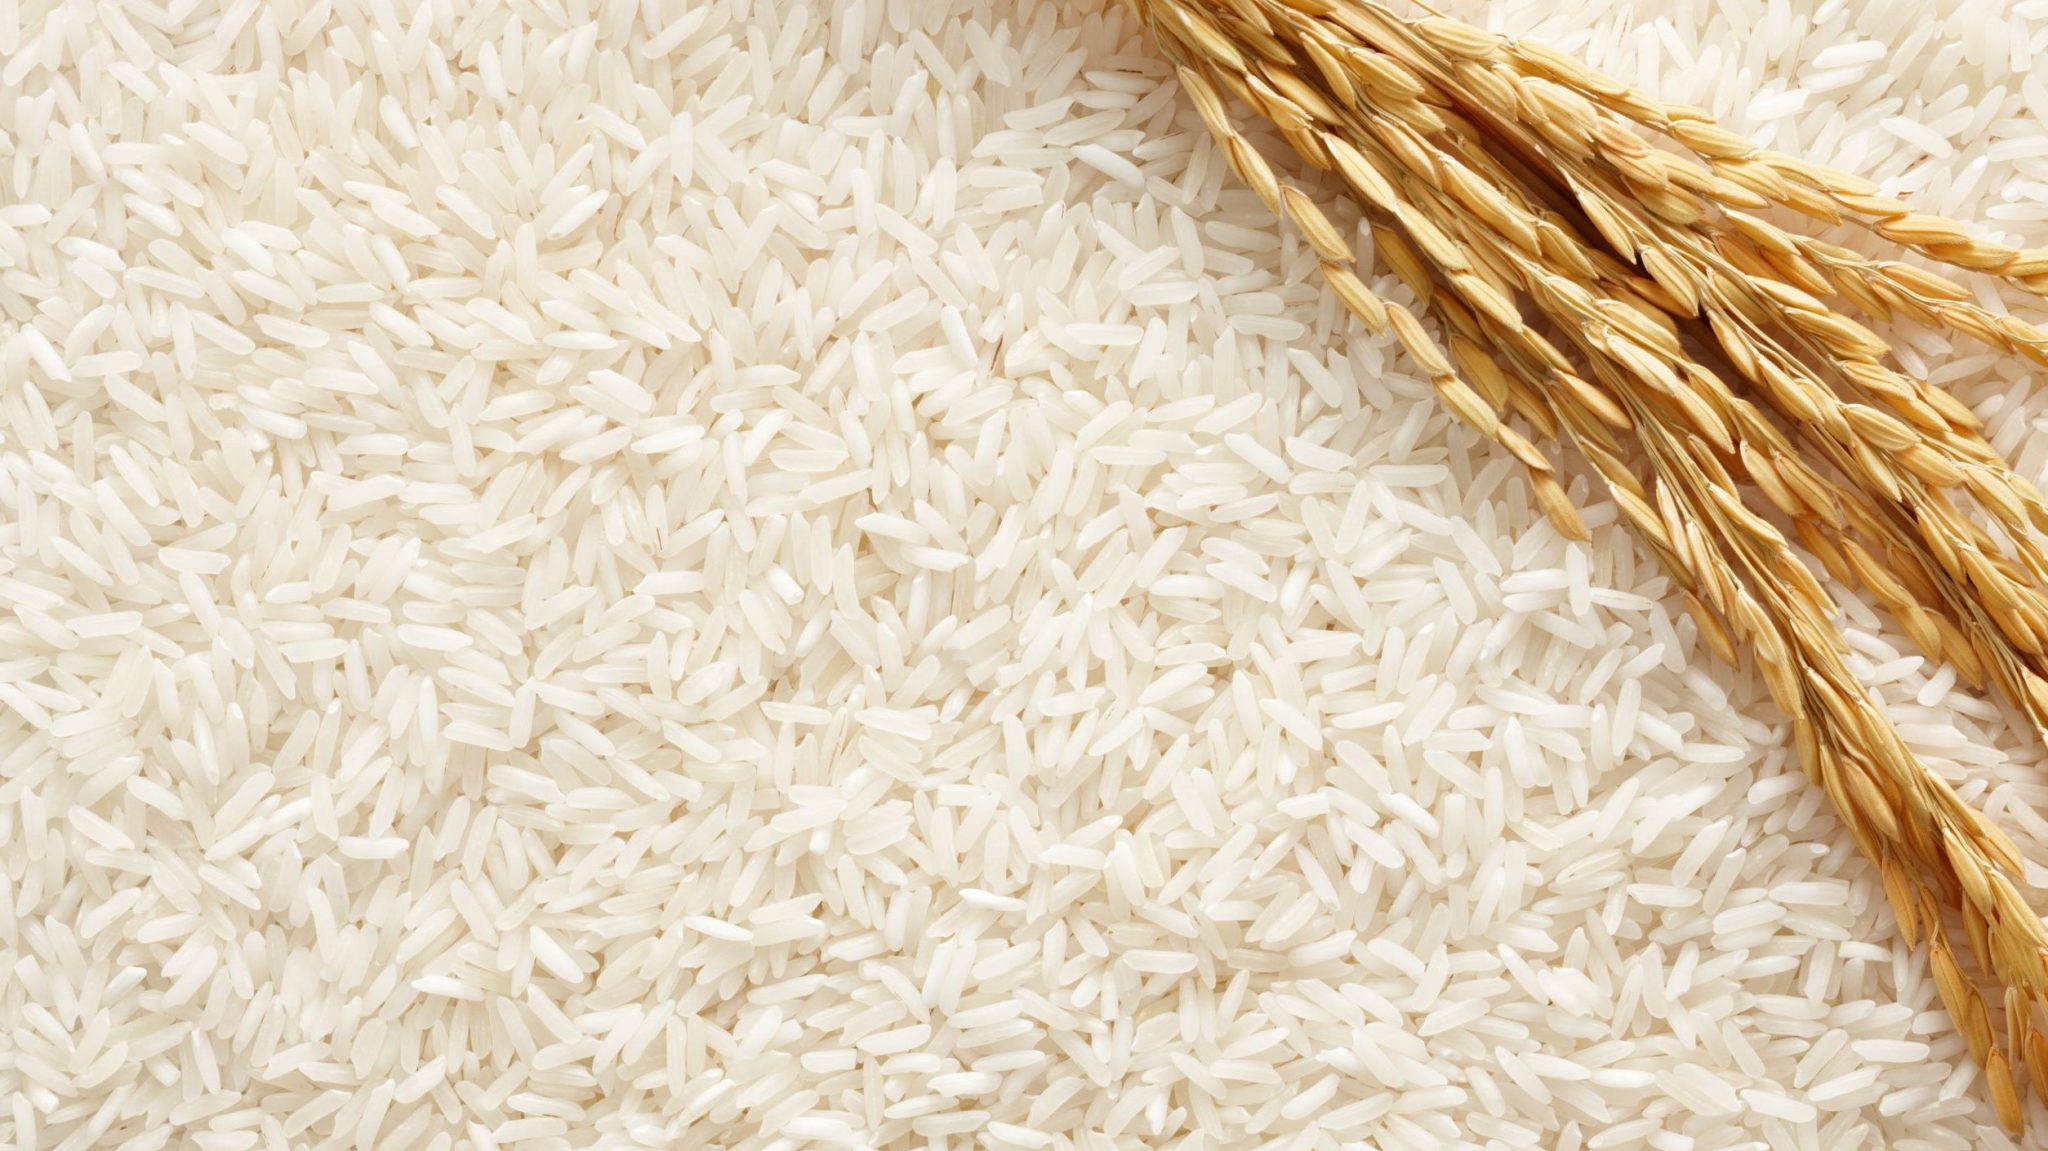 Apear: Producción de arroz de este año y stock 2020 garantizan demanda del 2022